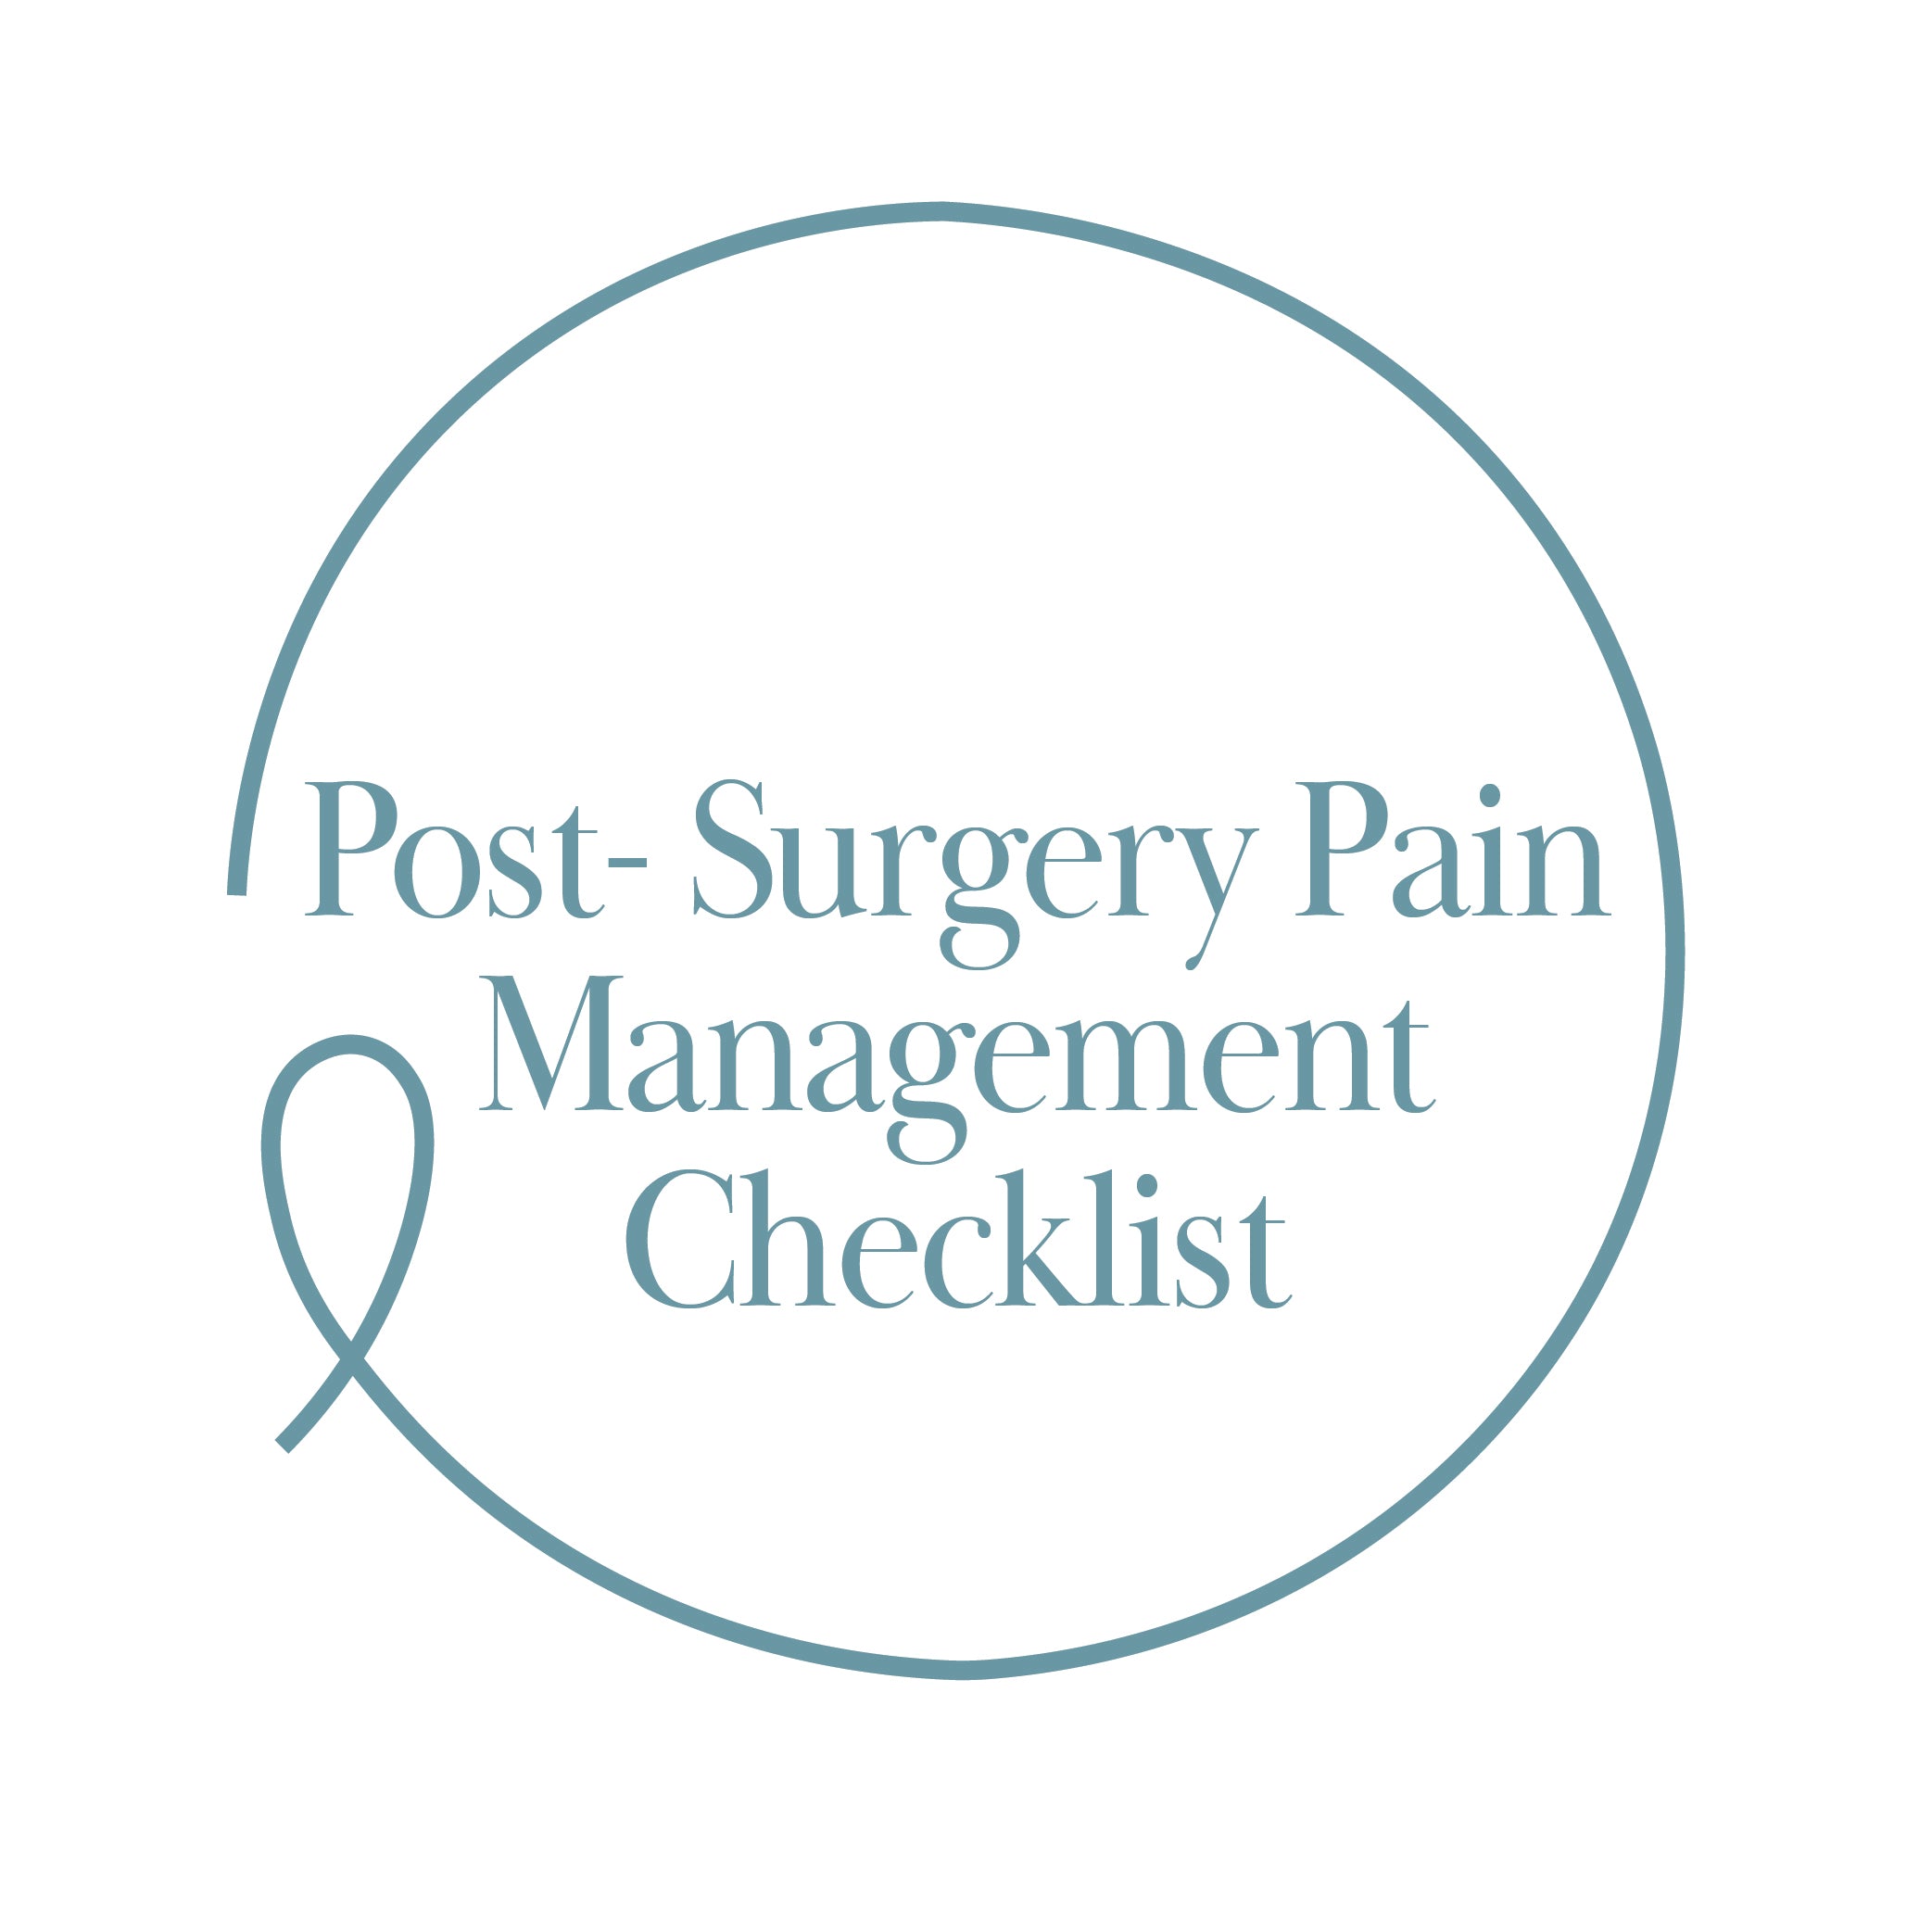 Post-Surgery Pain Management Checklist